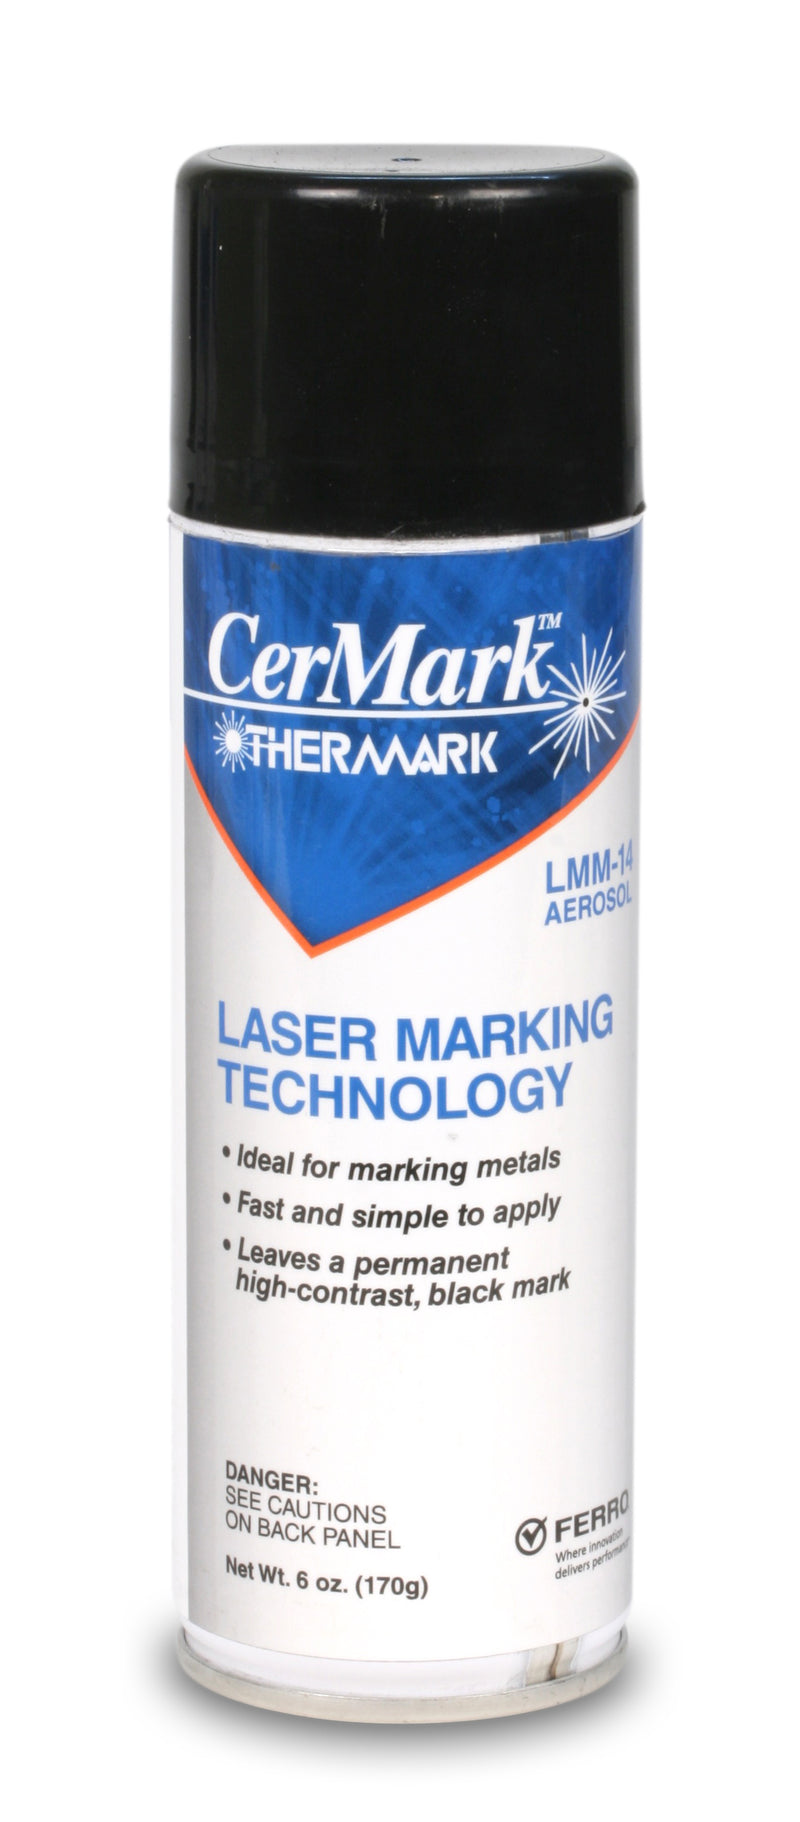 CerMark LMM 14 black for metals spray can – CerMark Sales